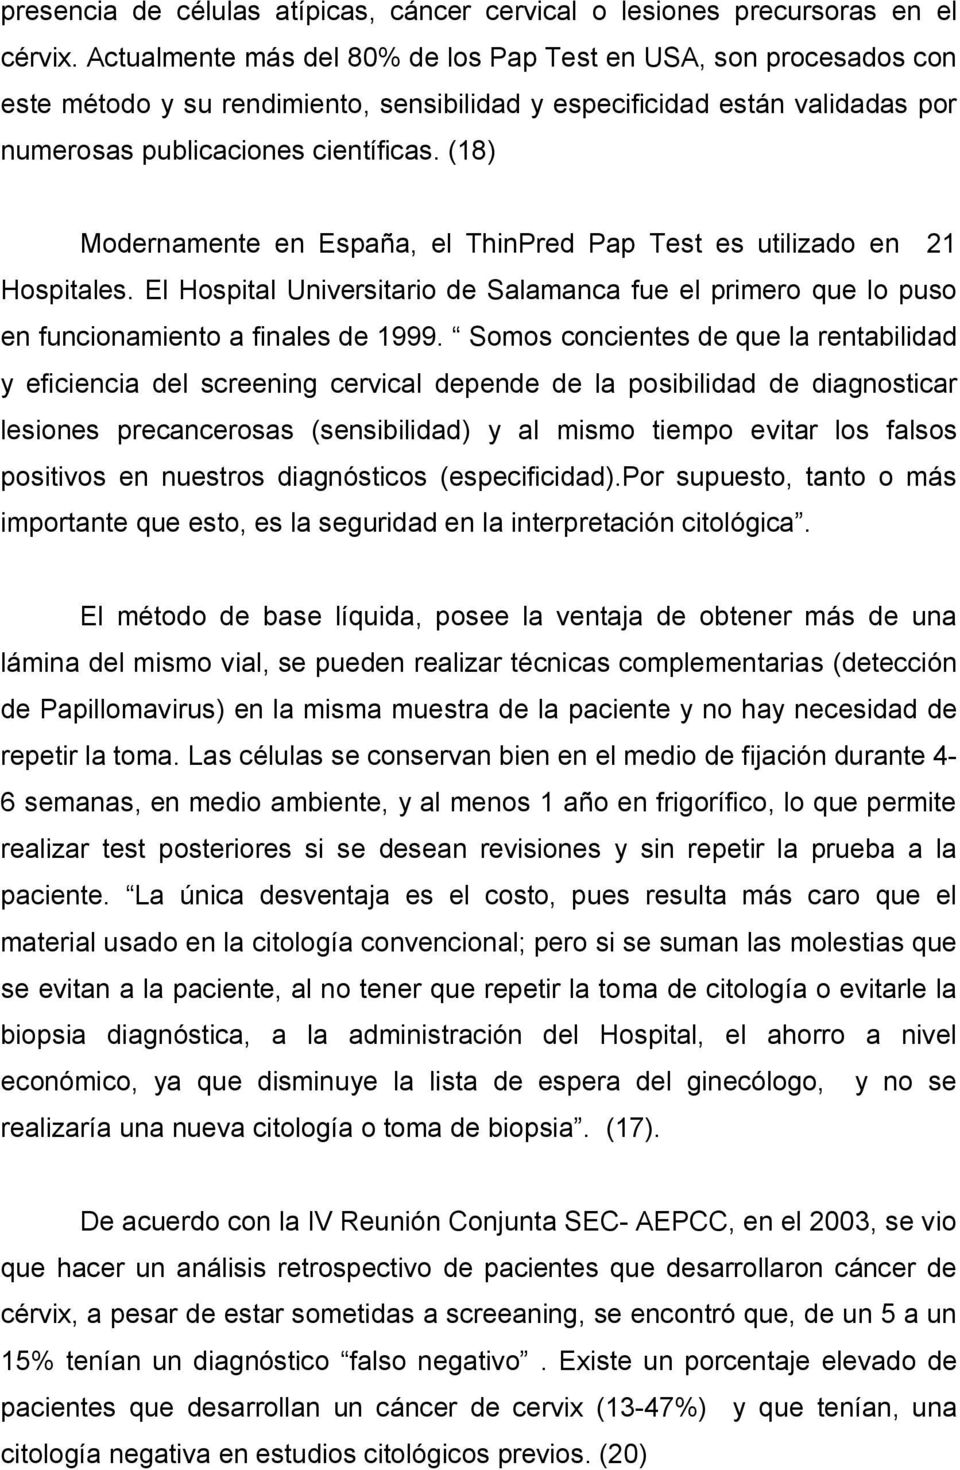 (18) Modernamente en España, el ThinPred Pap Test es utilizado en 21 Hospitales. El Hospital Universitario de Salamanca fue el primero que lo puso en funcionamiento a finales de 1999.